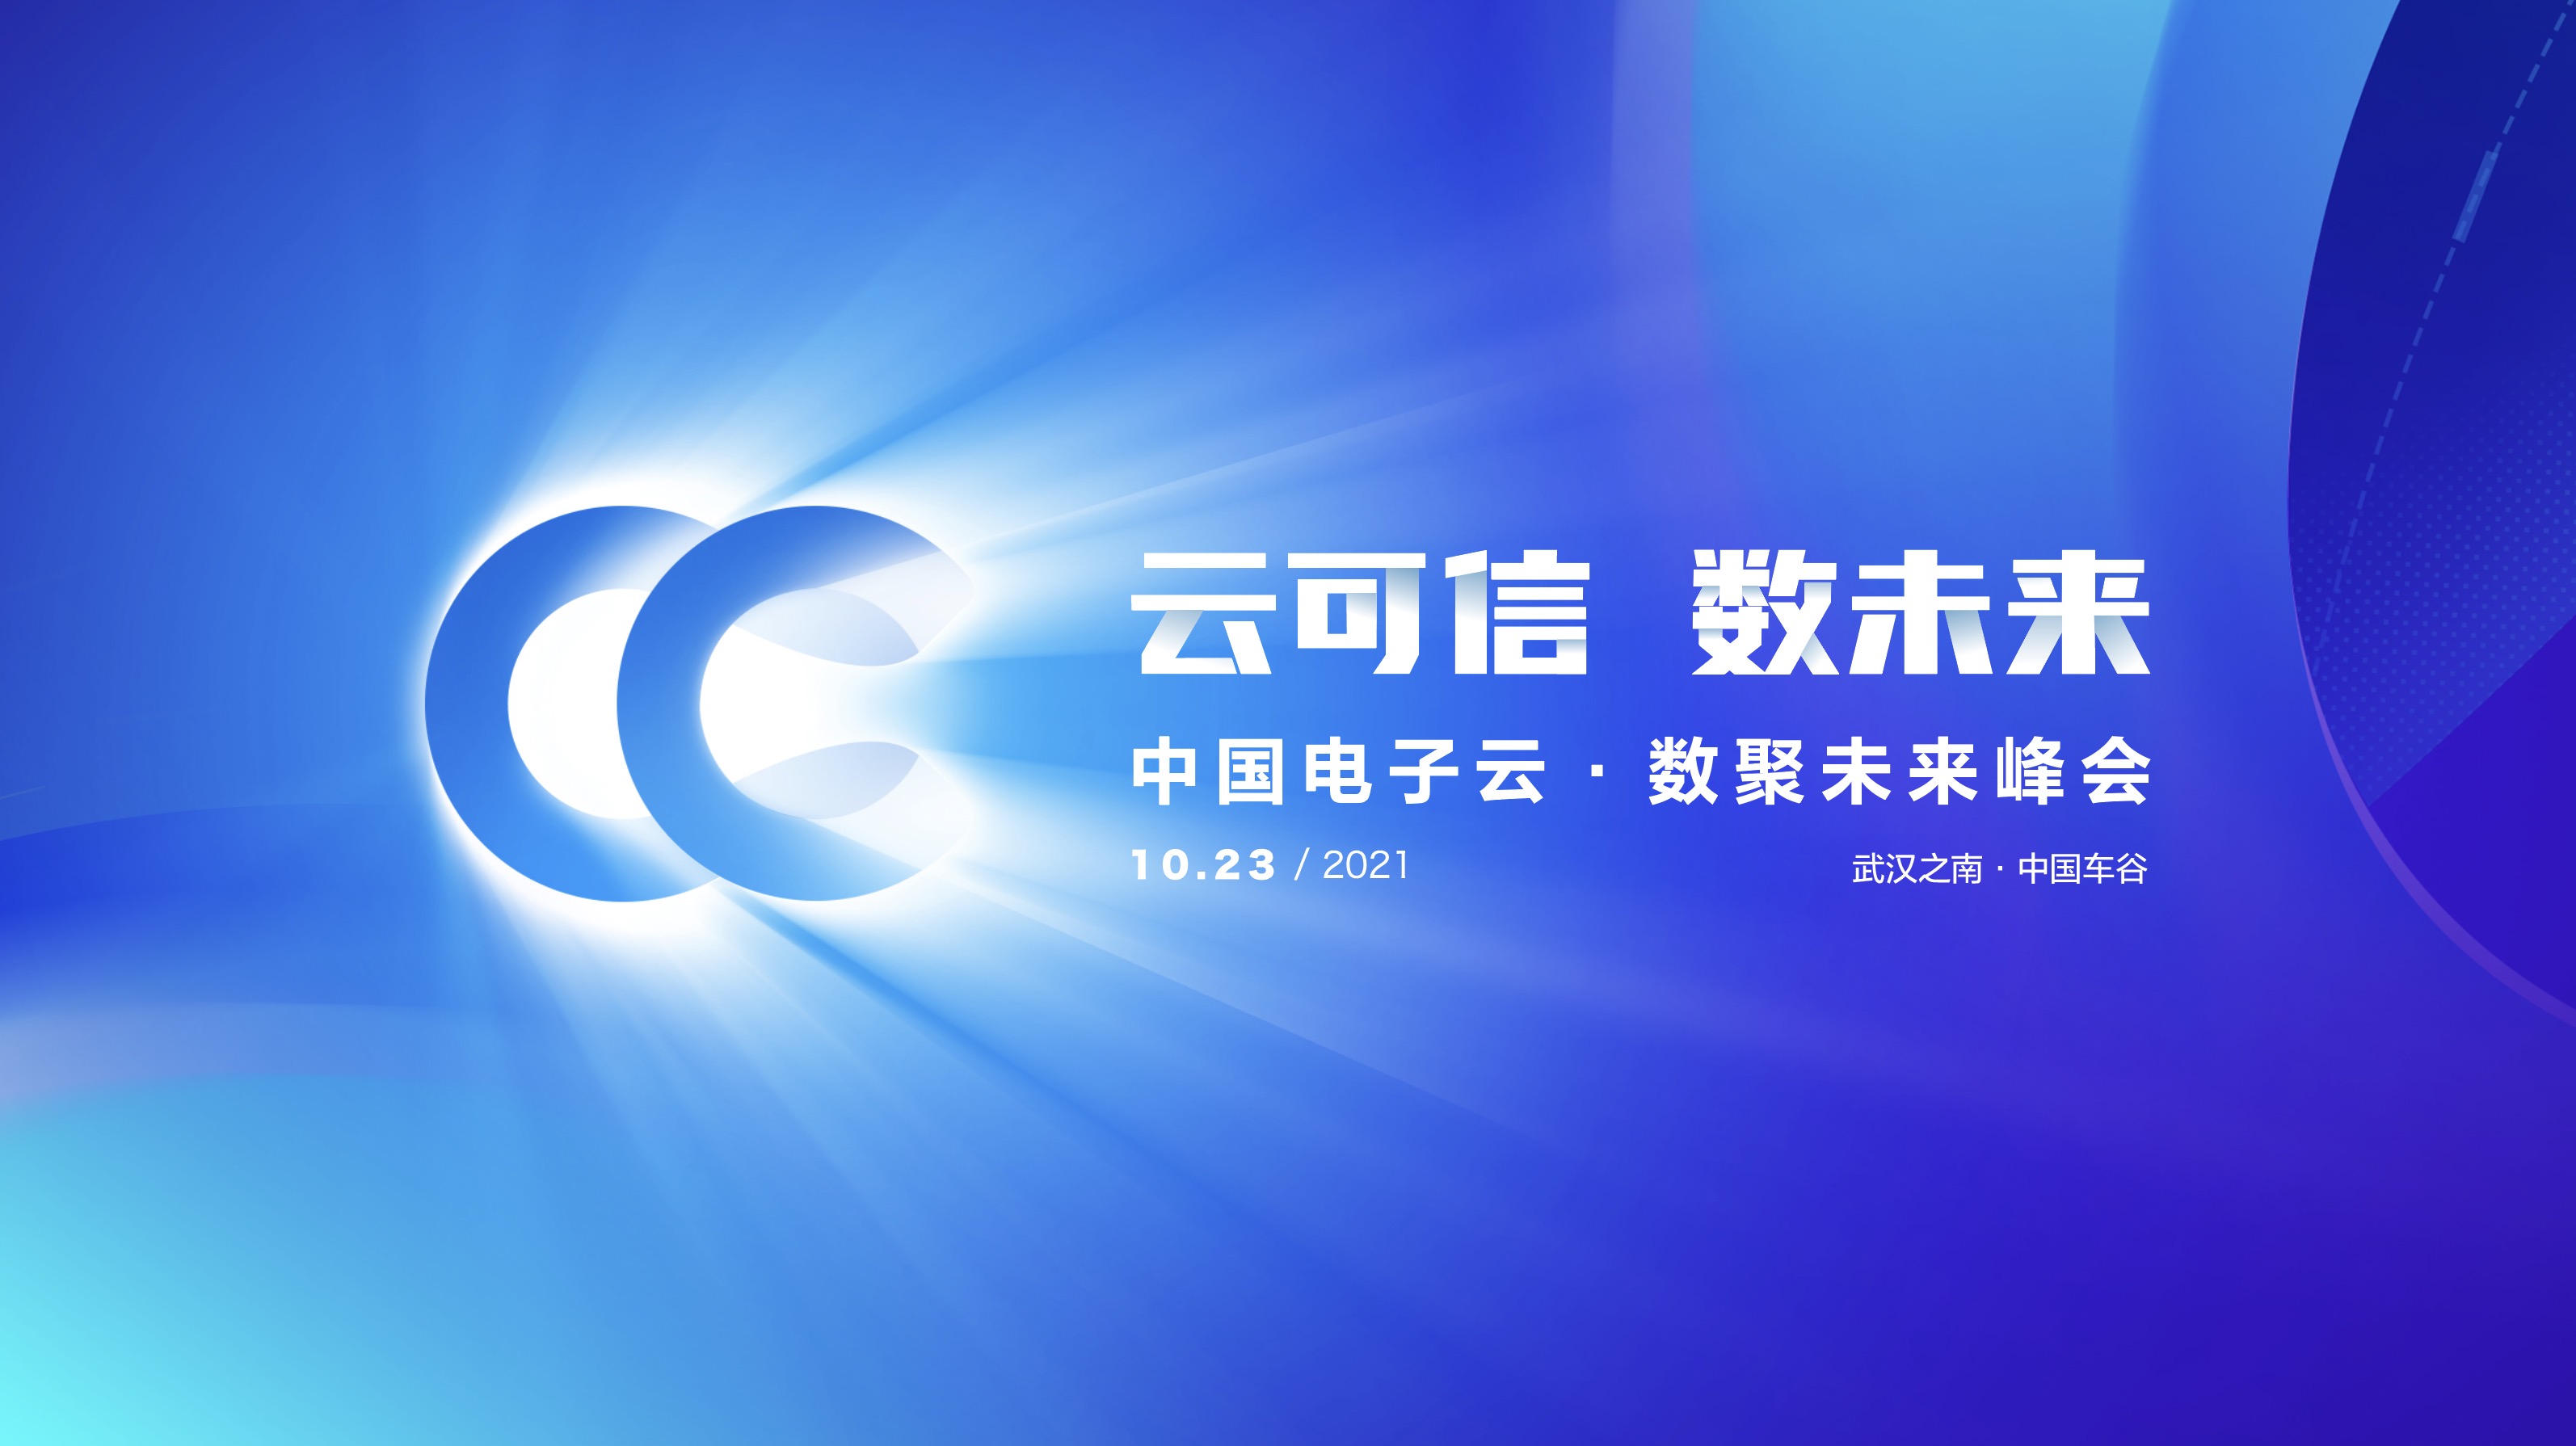 期待！武汉体育中心首次迎来顶级科技盛会！